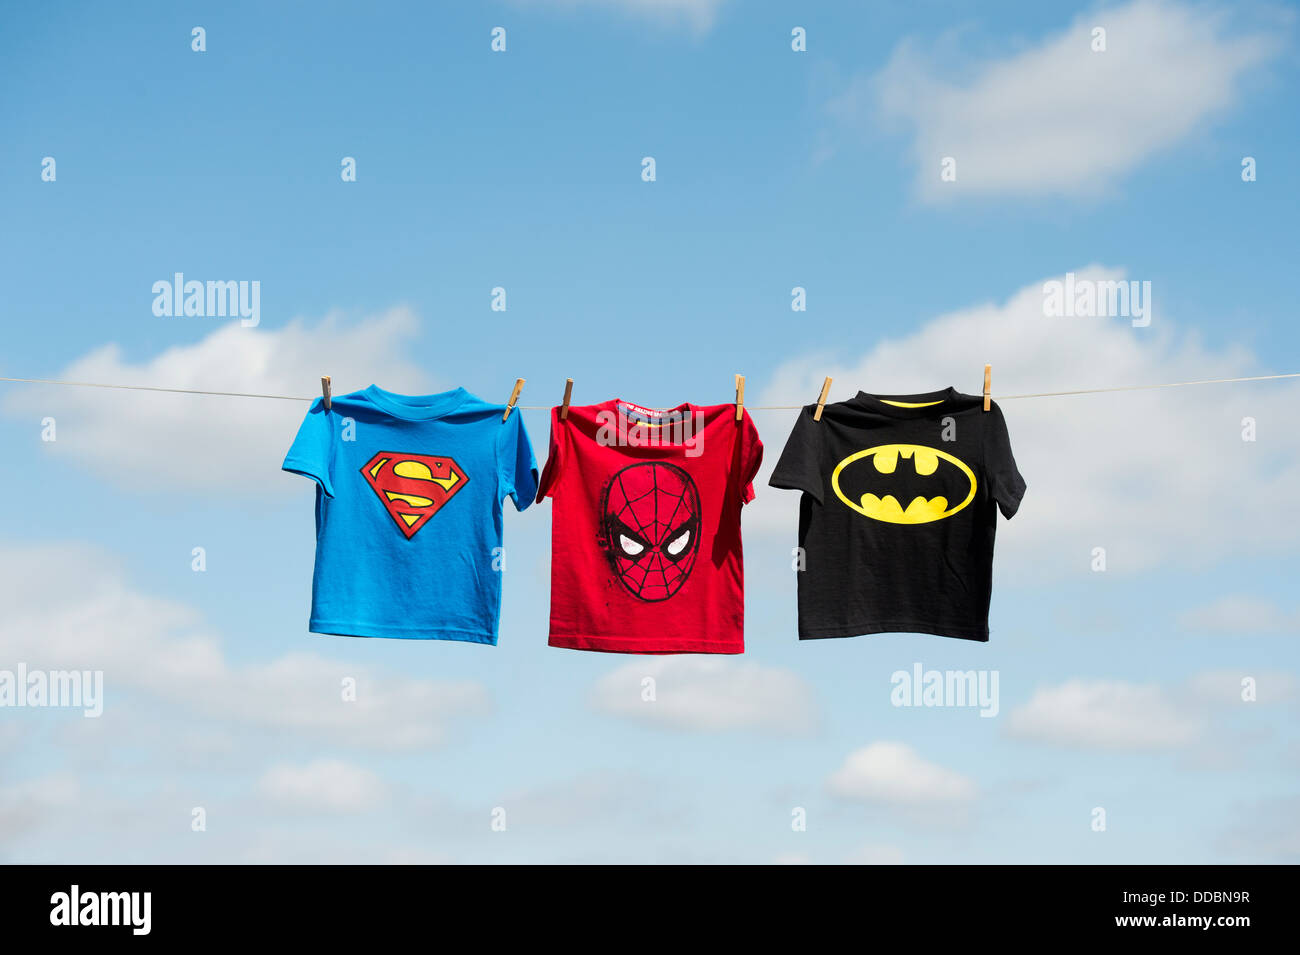 Childs, superman batman et spiderman t shirts accrochés sur une ligne de lavage Banque D'Images